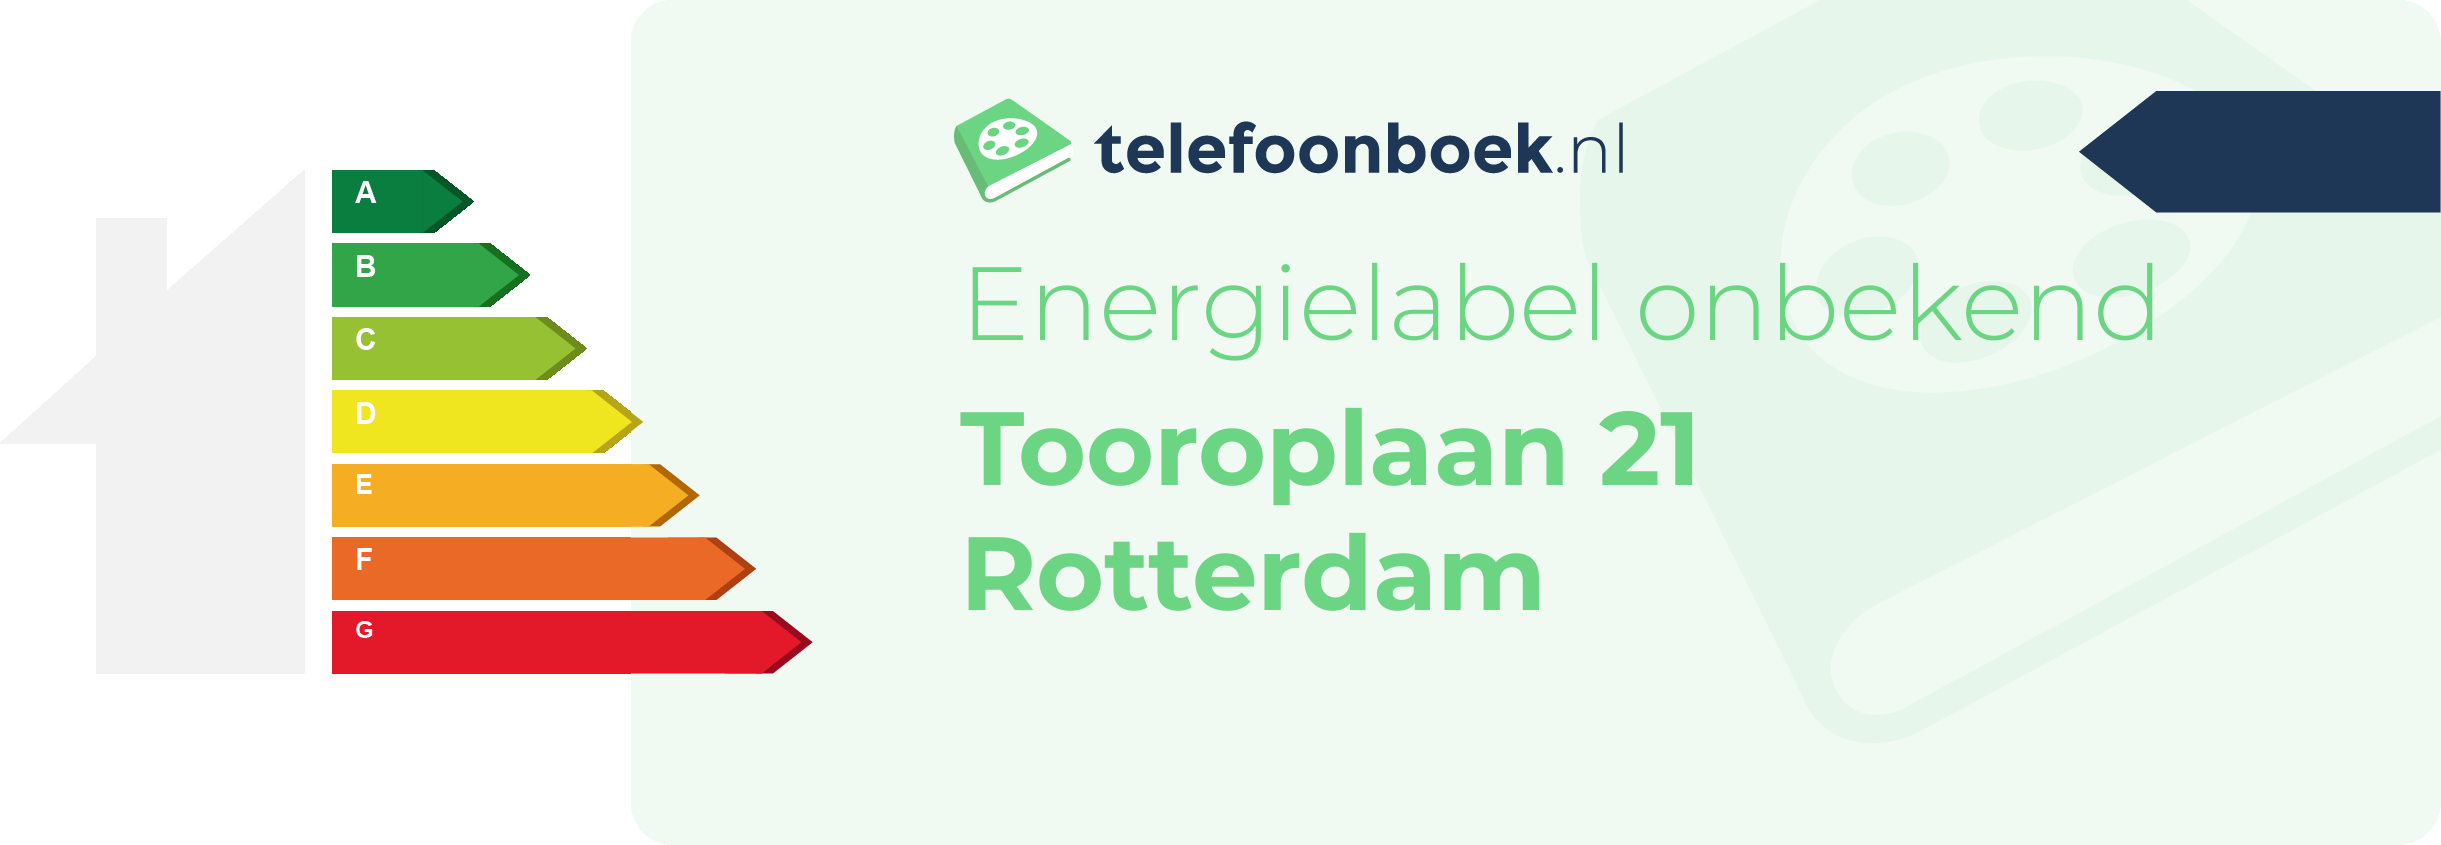 Energielabel Tooroplaan 21 Rotterdam